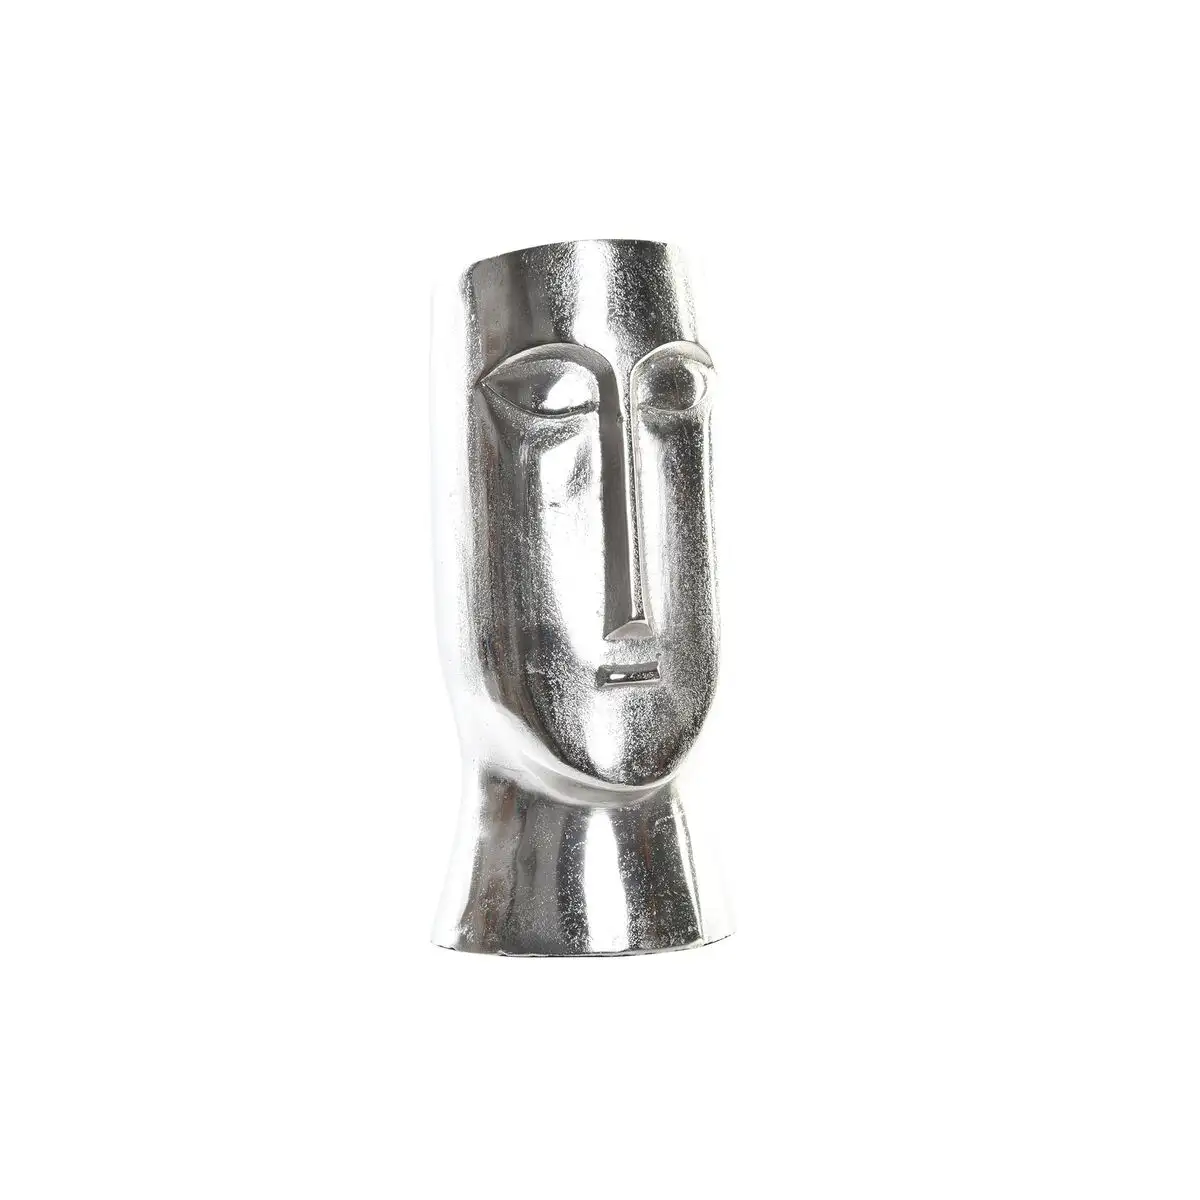 Vase dkd home decor visage argente aluminium moderne 17 x 16 x 36 cm _7235. DIAYTAR SENEGAL - Votre Passage vers l'Élégance Abordable. Explorez notre collection où chaque produit est choisi pour sa qualité et son accessibilité, incarnant ainsi l'essence du Sénégal.